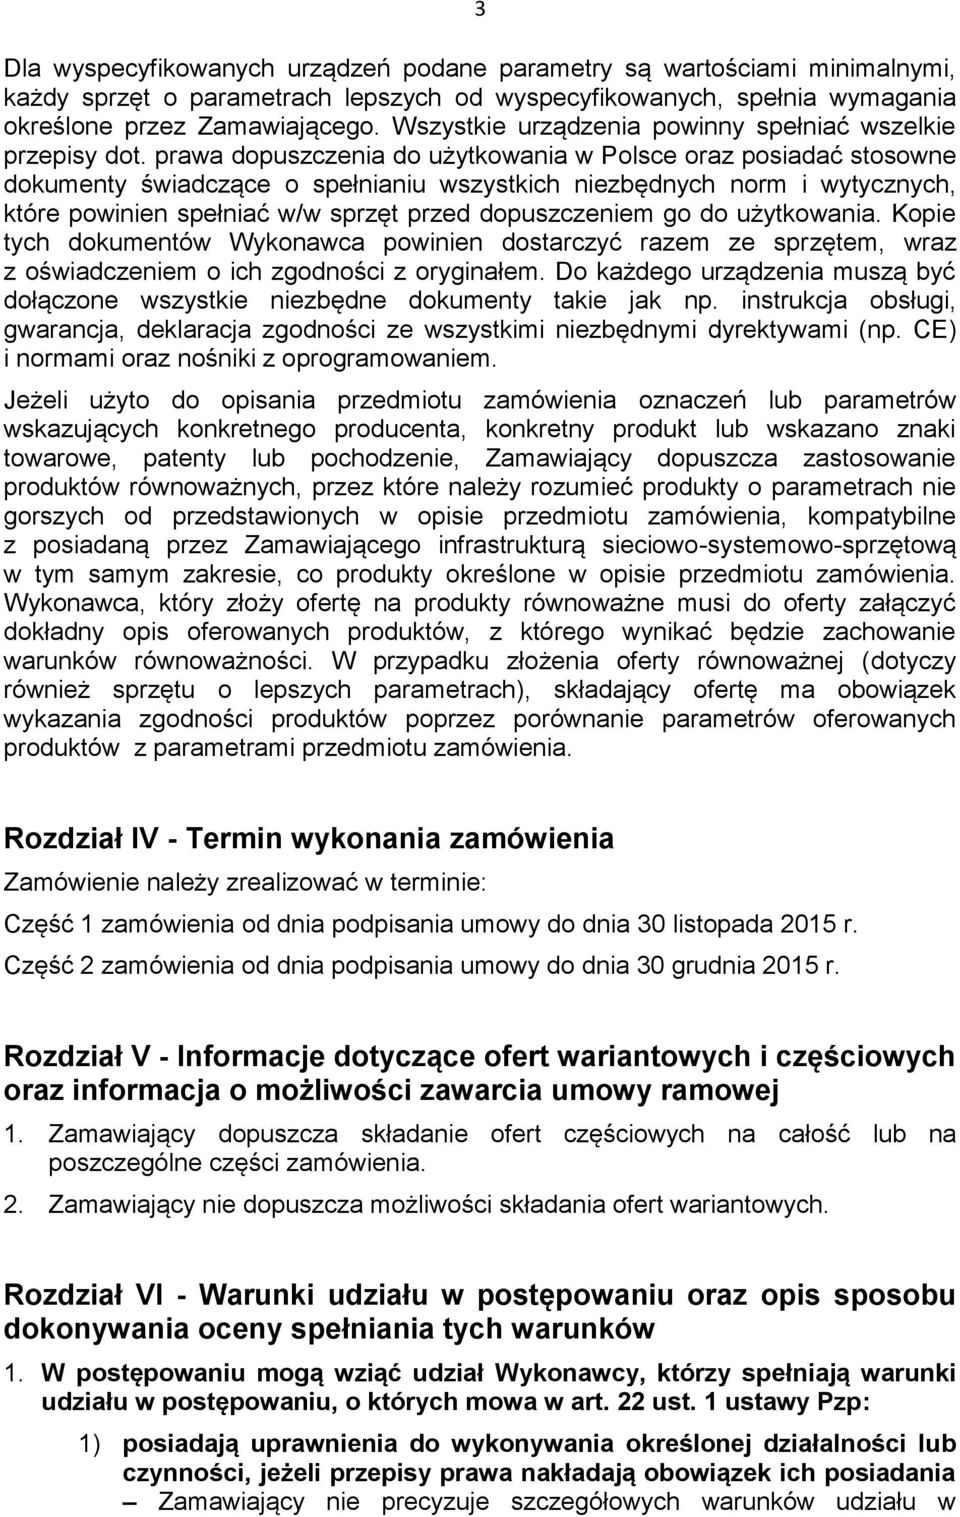 prawa dopuszczenia do użytkowania w Polsce oraz posiadać stosowne dokumenty świadczące o spełnianiu wszystkich niezbędnych norm i wytycznych, które powinien spełniać w/w sprzęt przed dopuszczeniem go